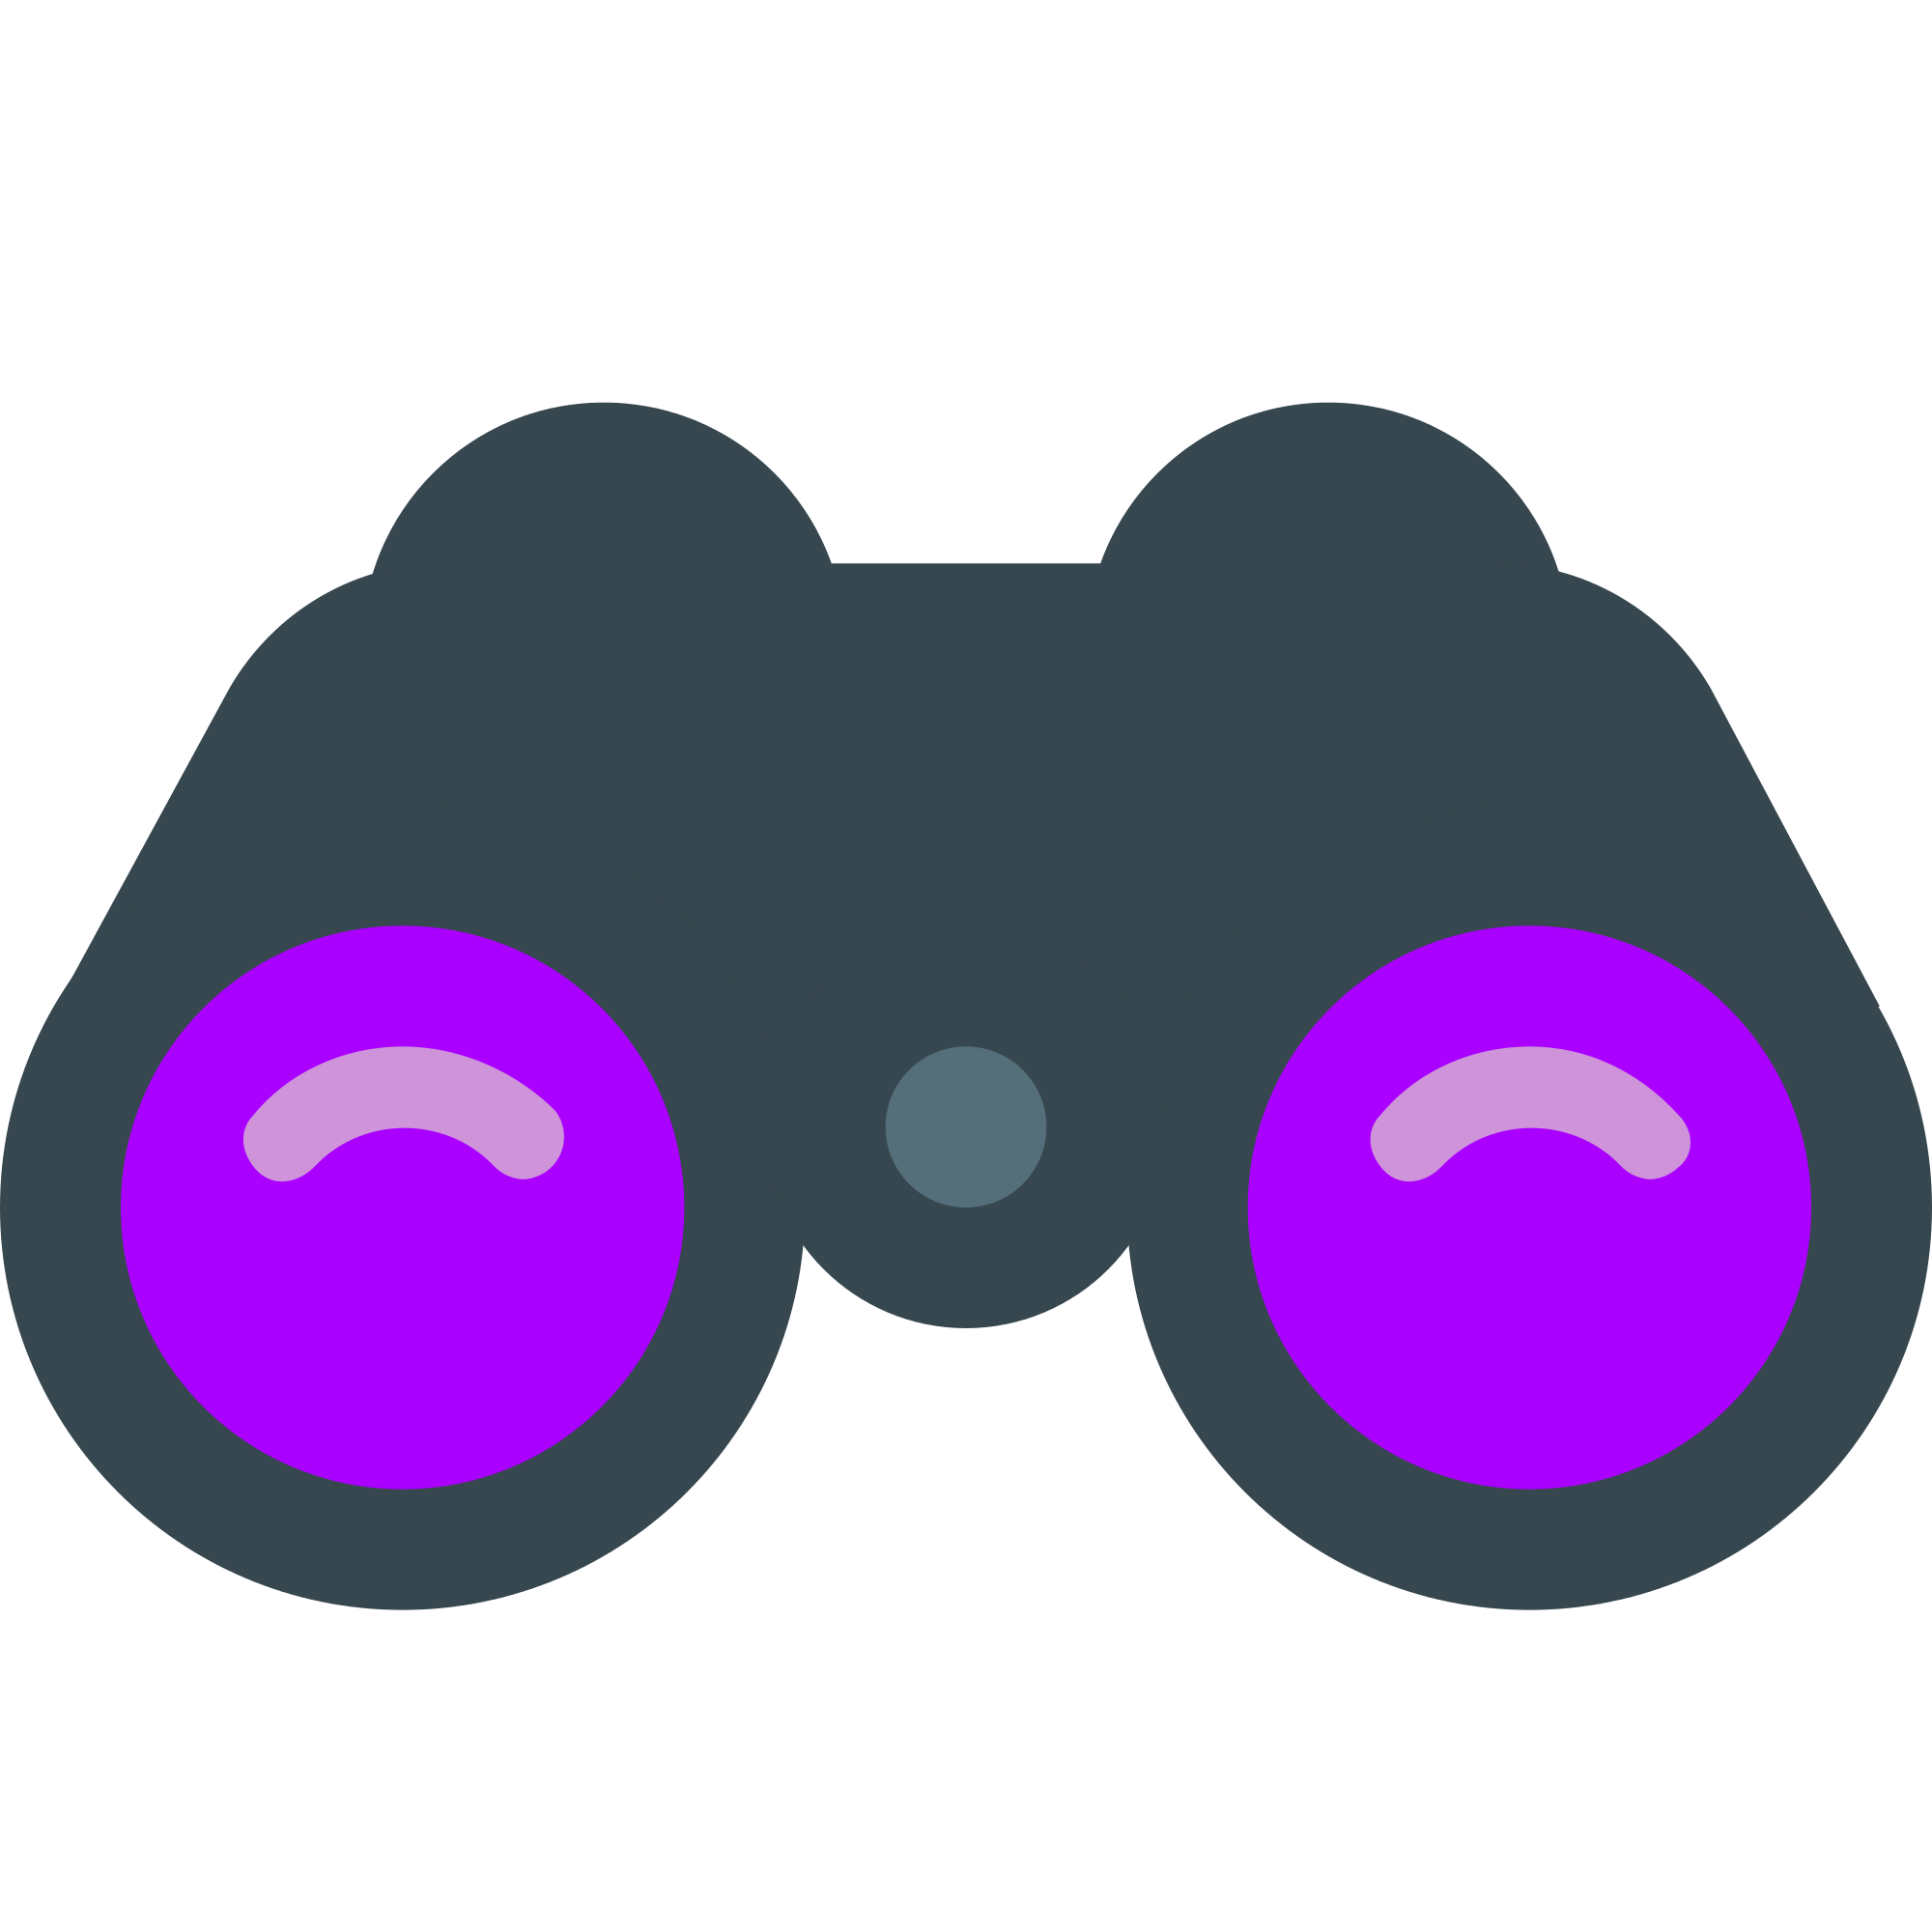 binoculars flat icon